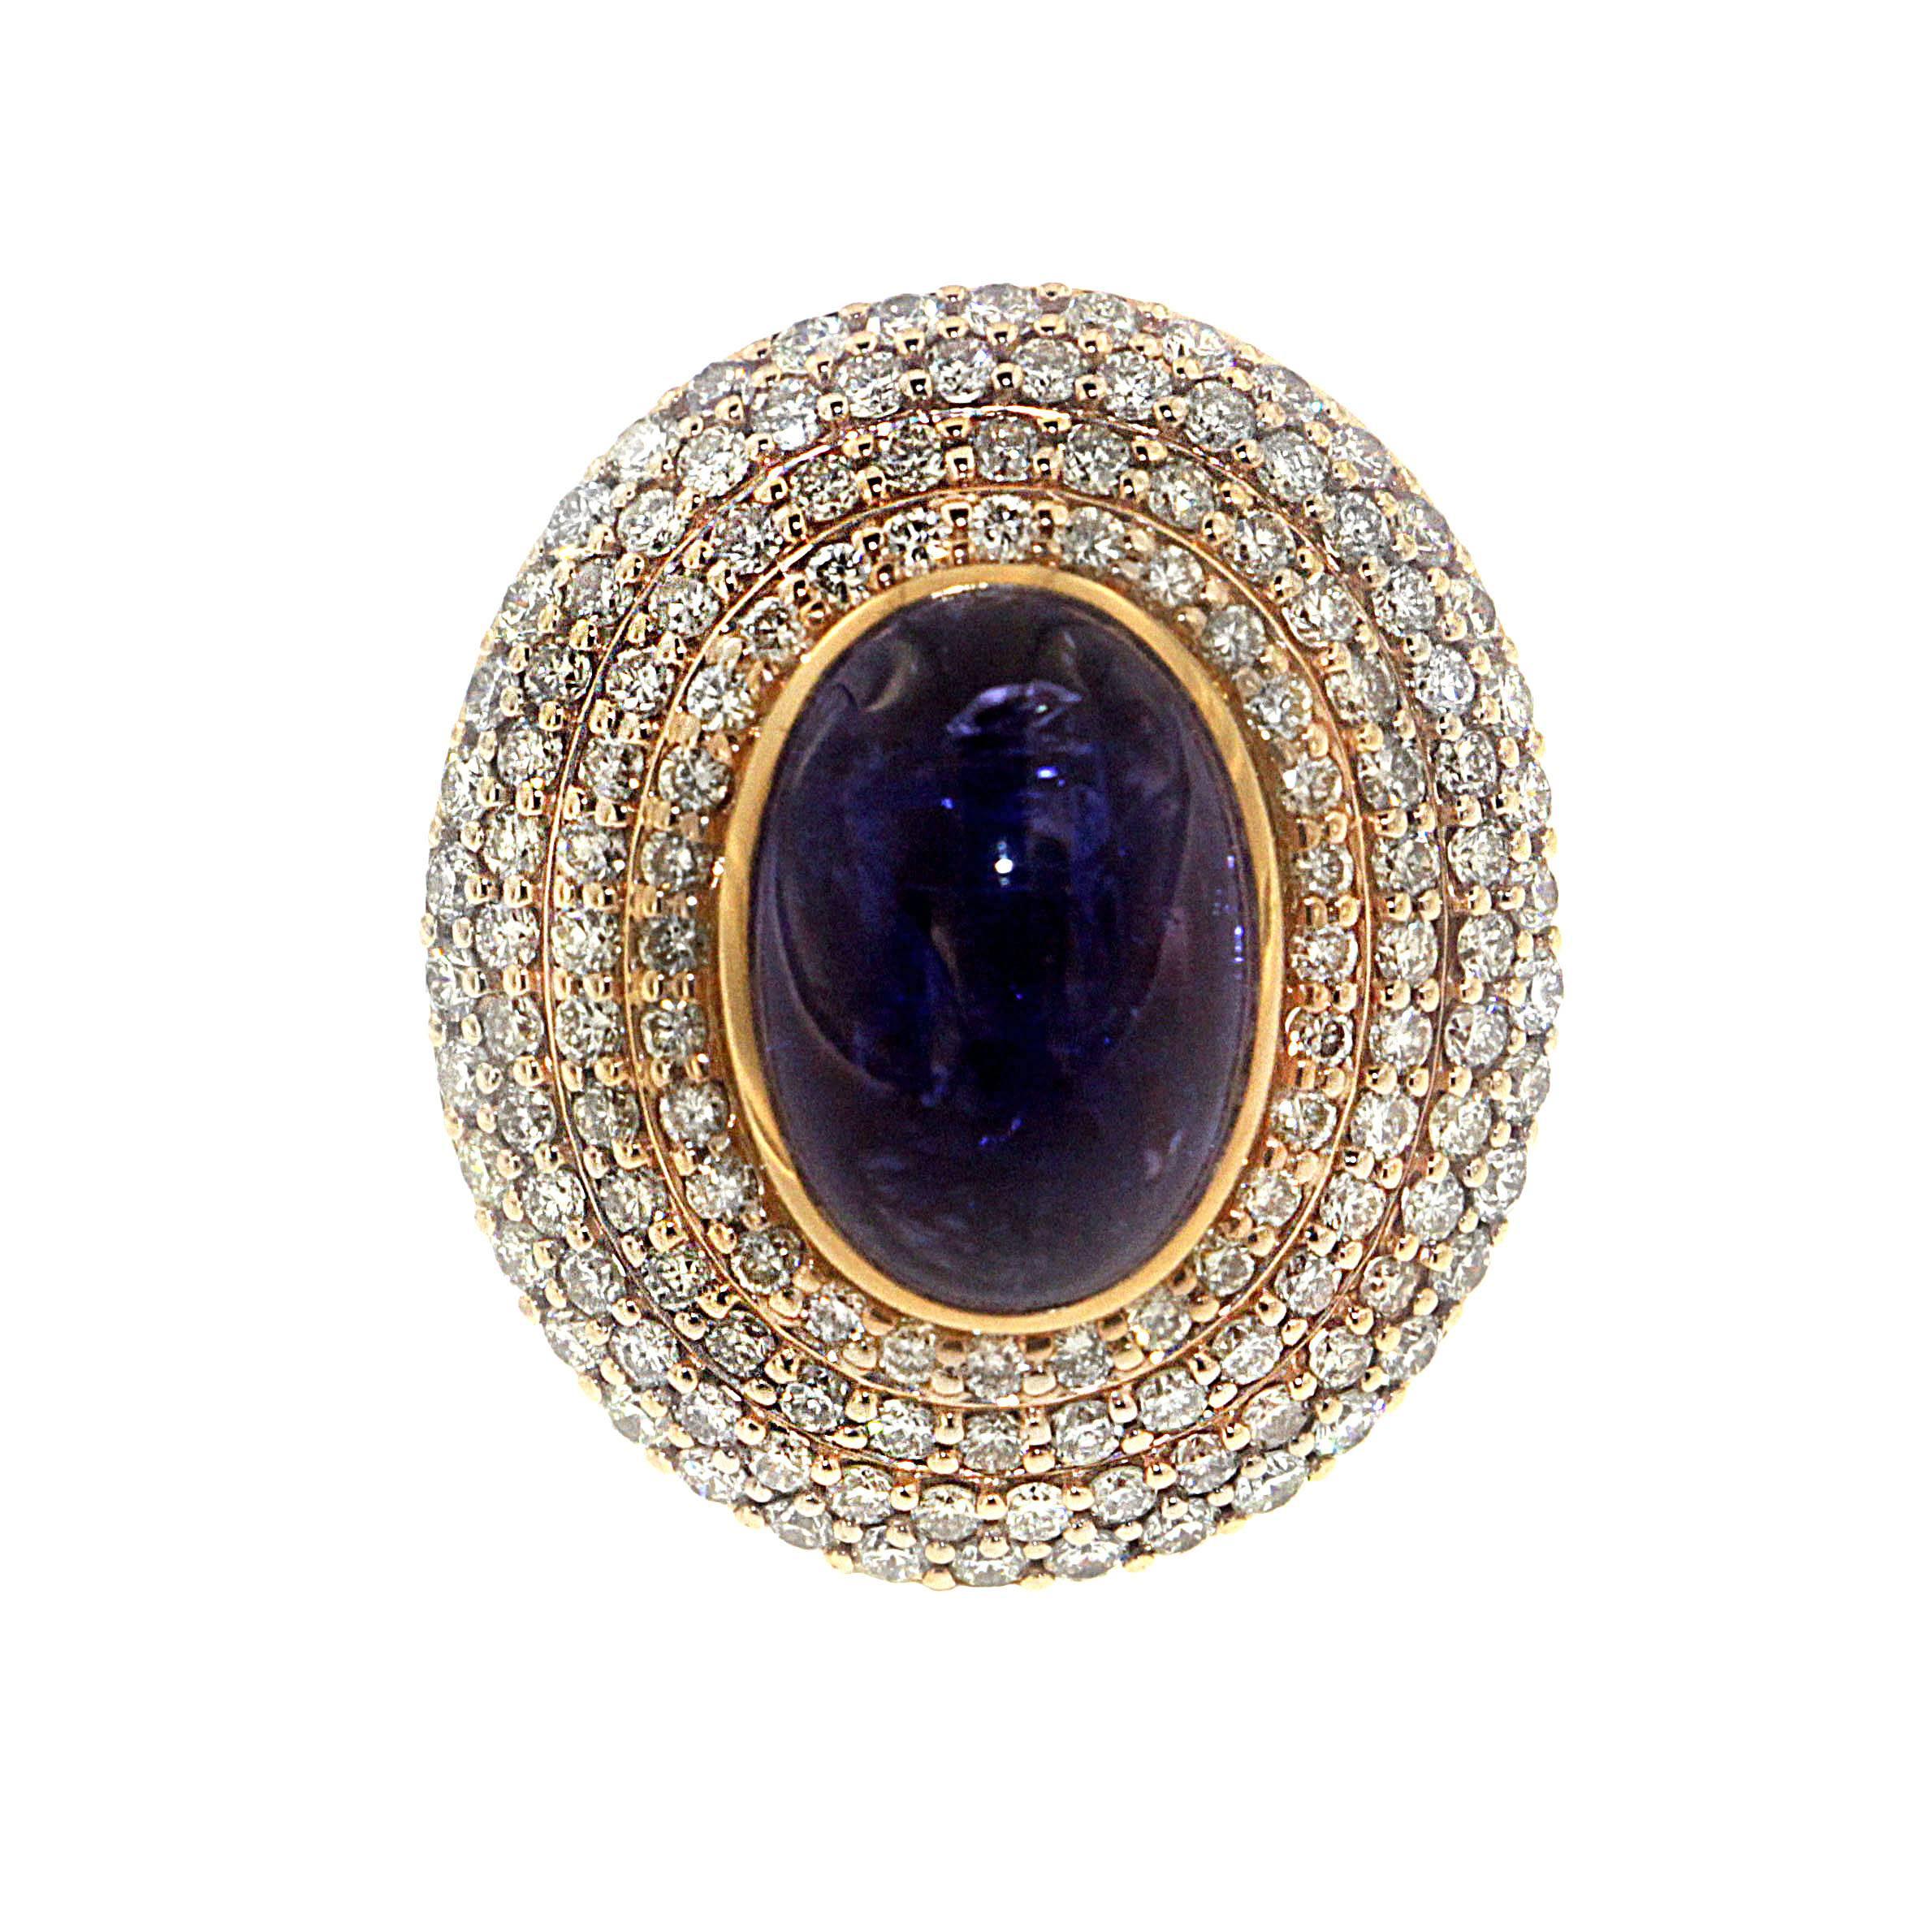 Die Ästhetik des Celestra Rings, einer Zorab Creation, ist ebenso weltlich wie ätherisch.

9,25 Karat tiefblau-violetter Tansanit-Cabochon sind von vier Reihen strahlend weißer Diamanten umgeben, die zusammen 2,43 Karat ausmachen und eines